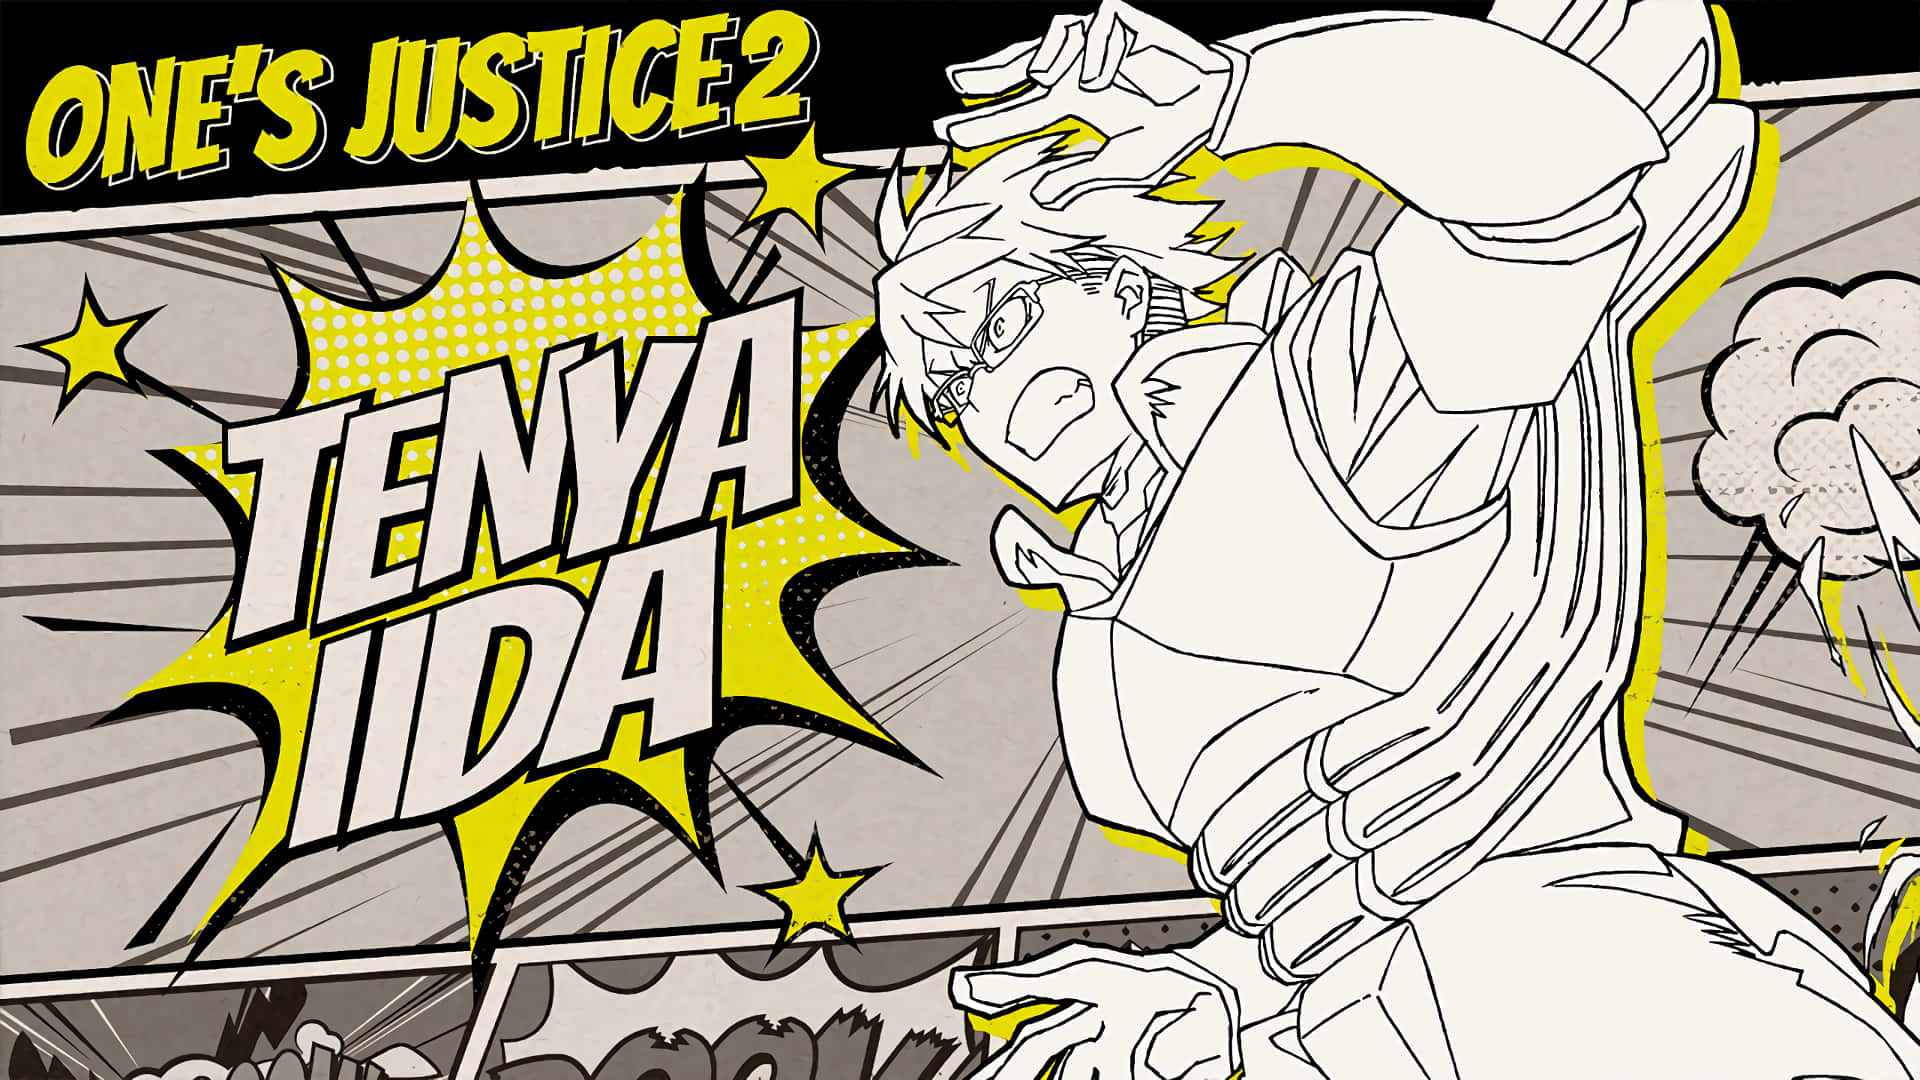 Tenya Iida, a leader in the superhero world Wallpaper